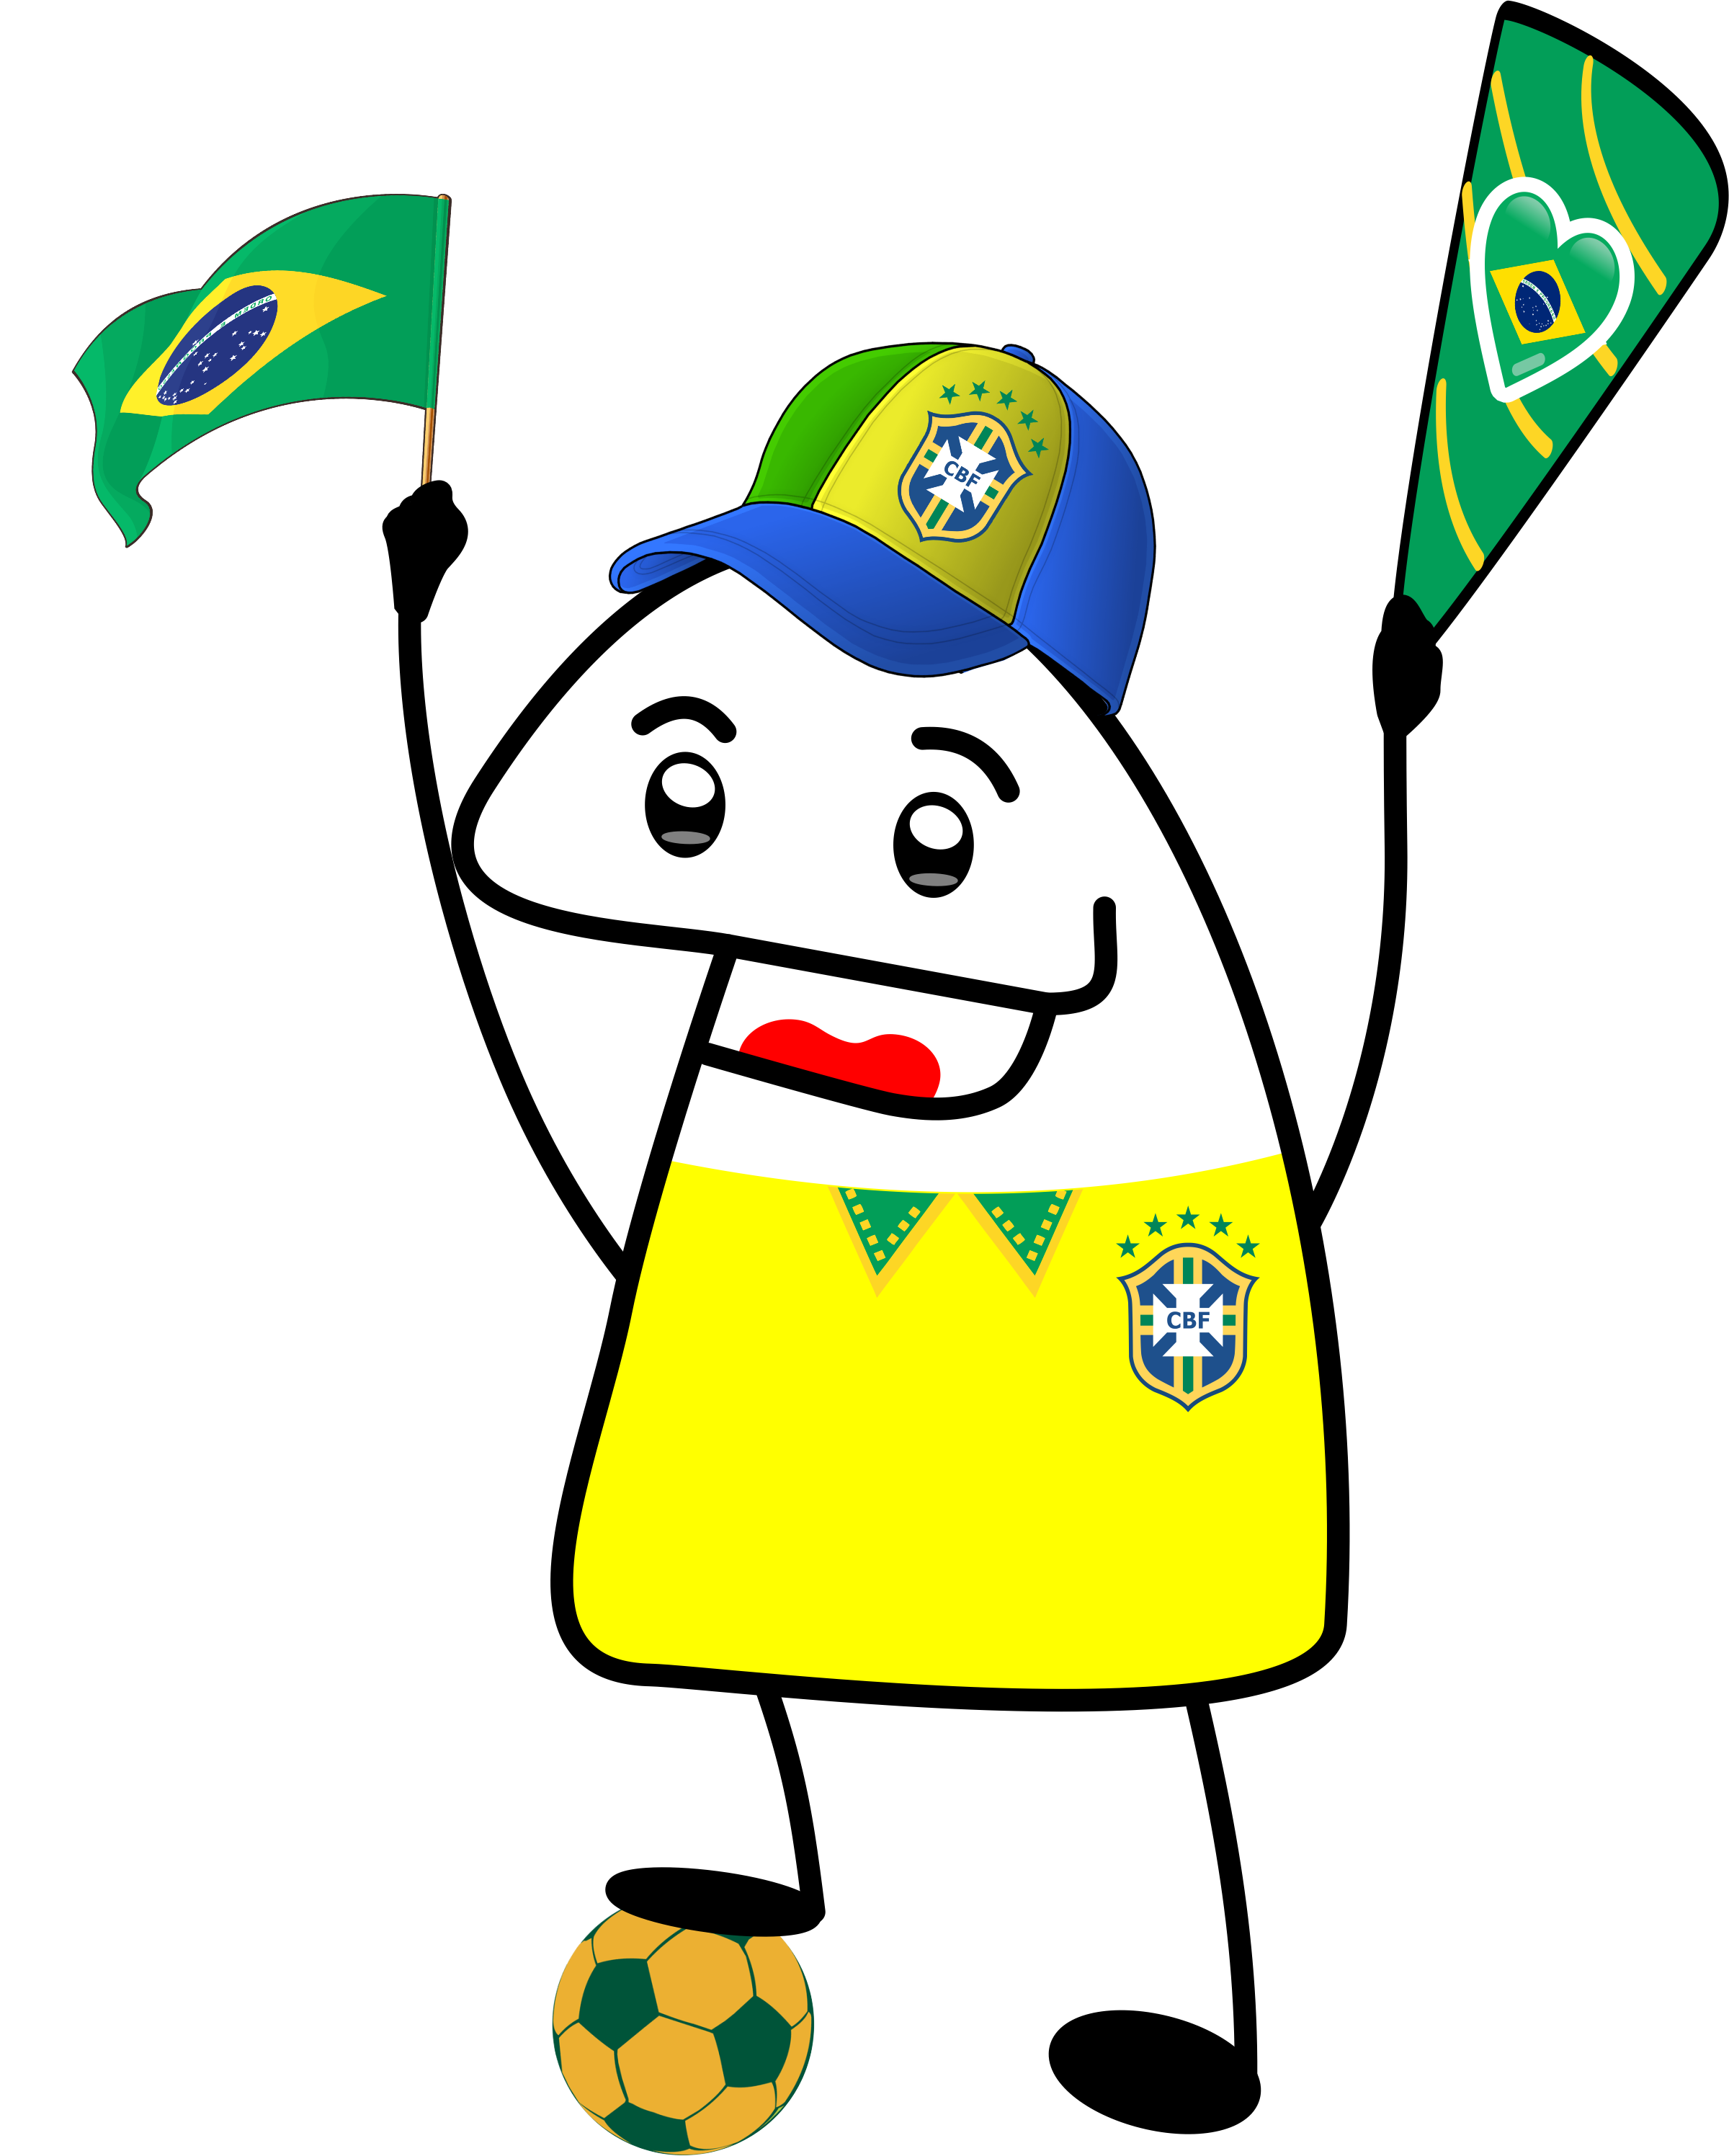 Copa do mundo 2022 pack de imagens flork com 10 figurinhas engraçadas para whatsapp